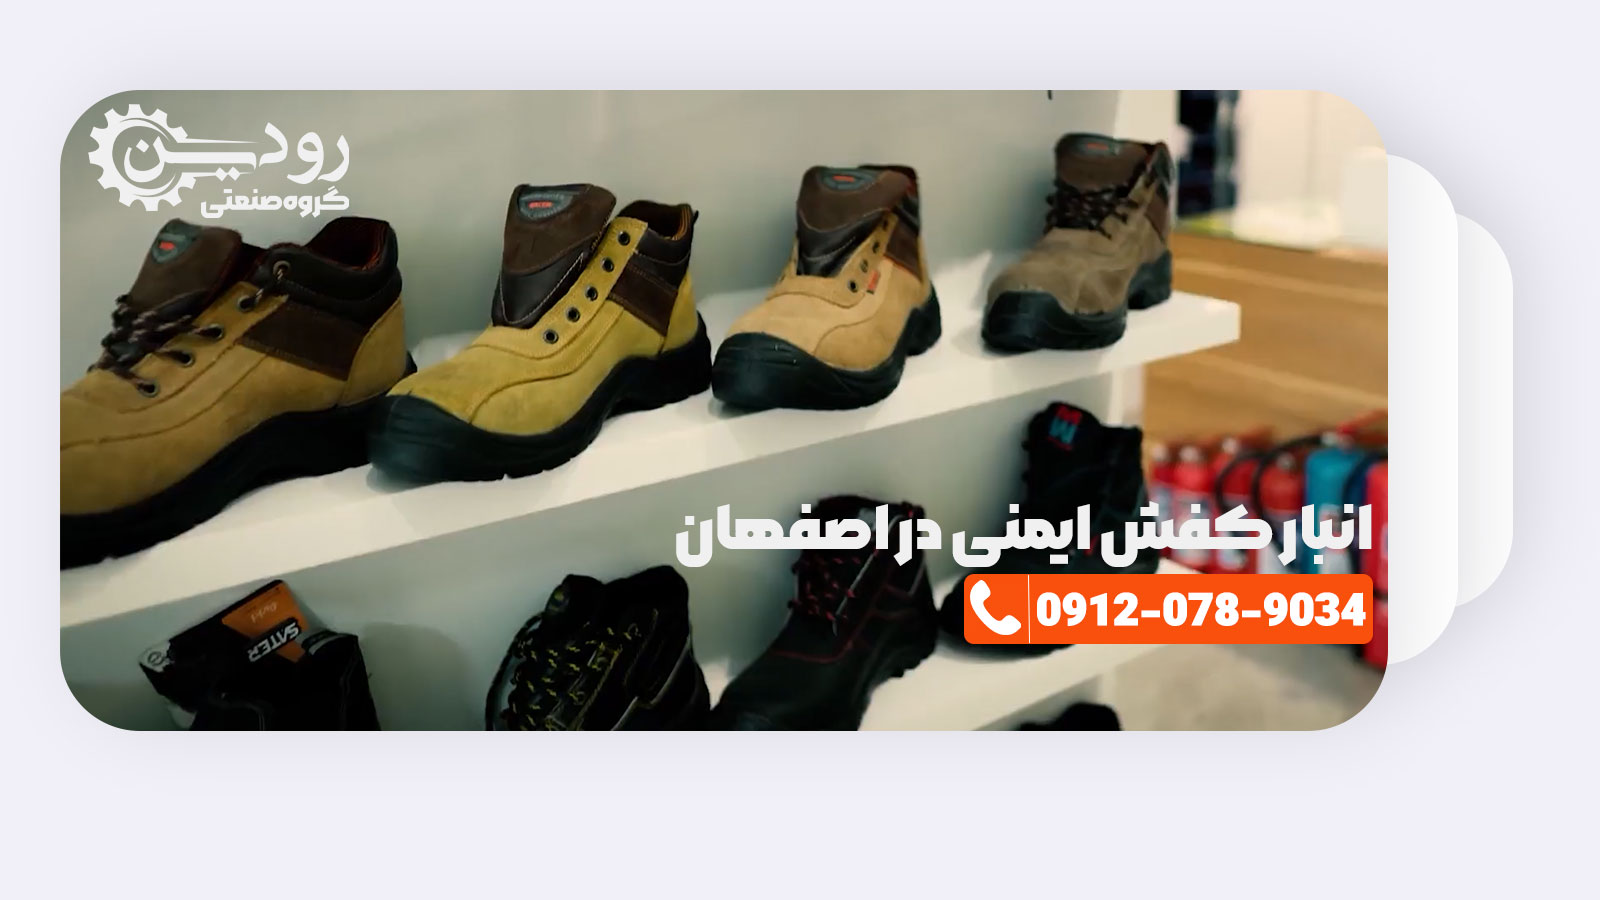 در فروشگاه کفش ایمنی اصفهان انواع کفش ایمنی با کیفیت مناسب بفروش میرسد.